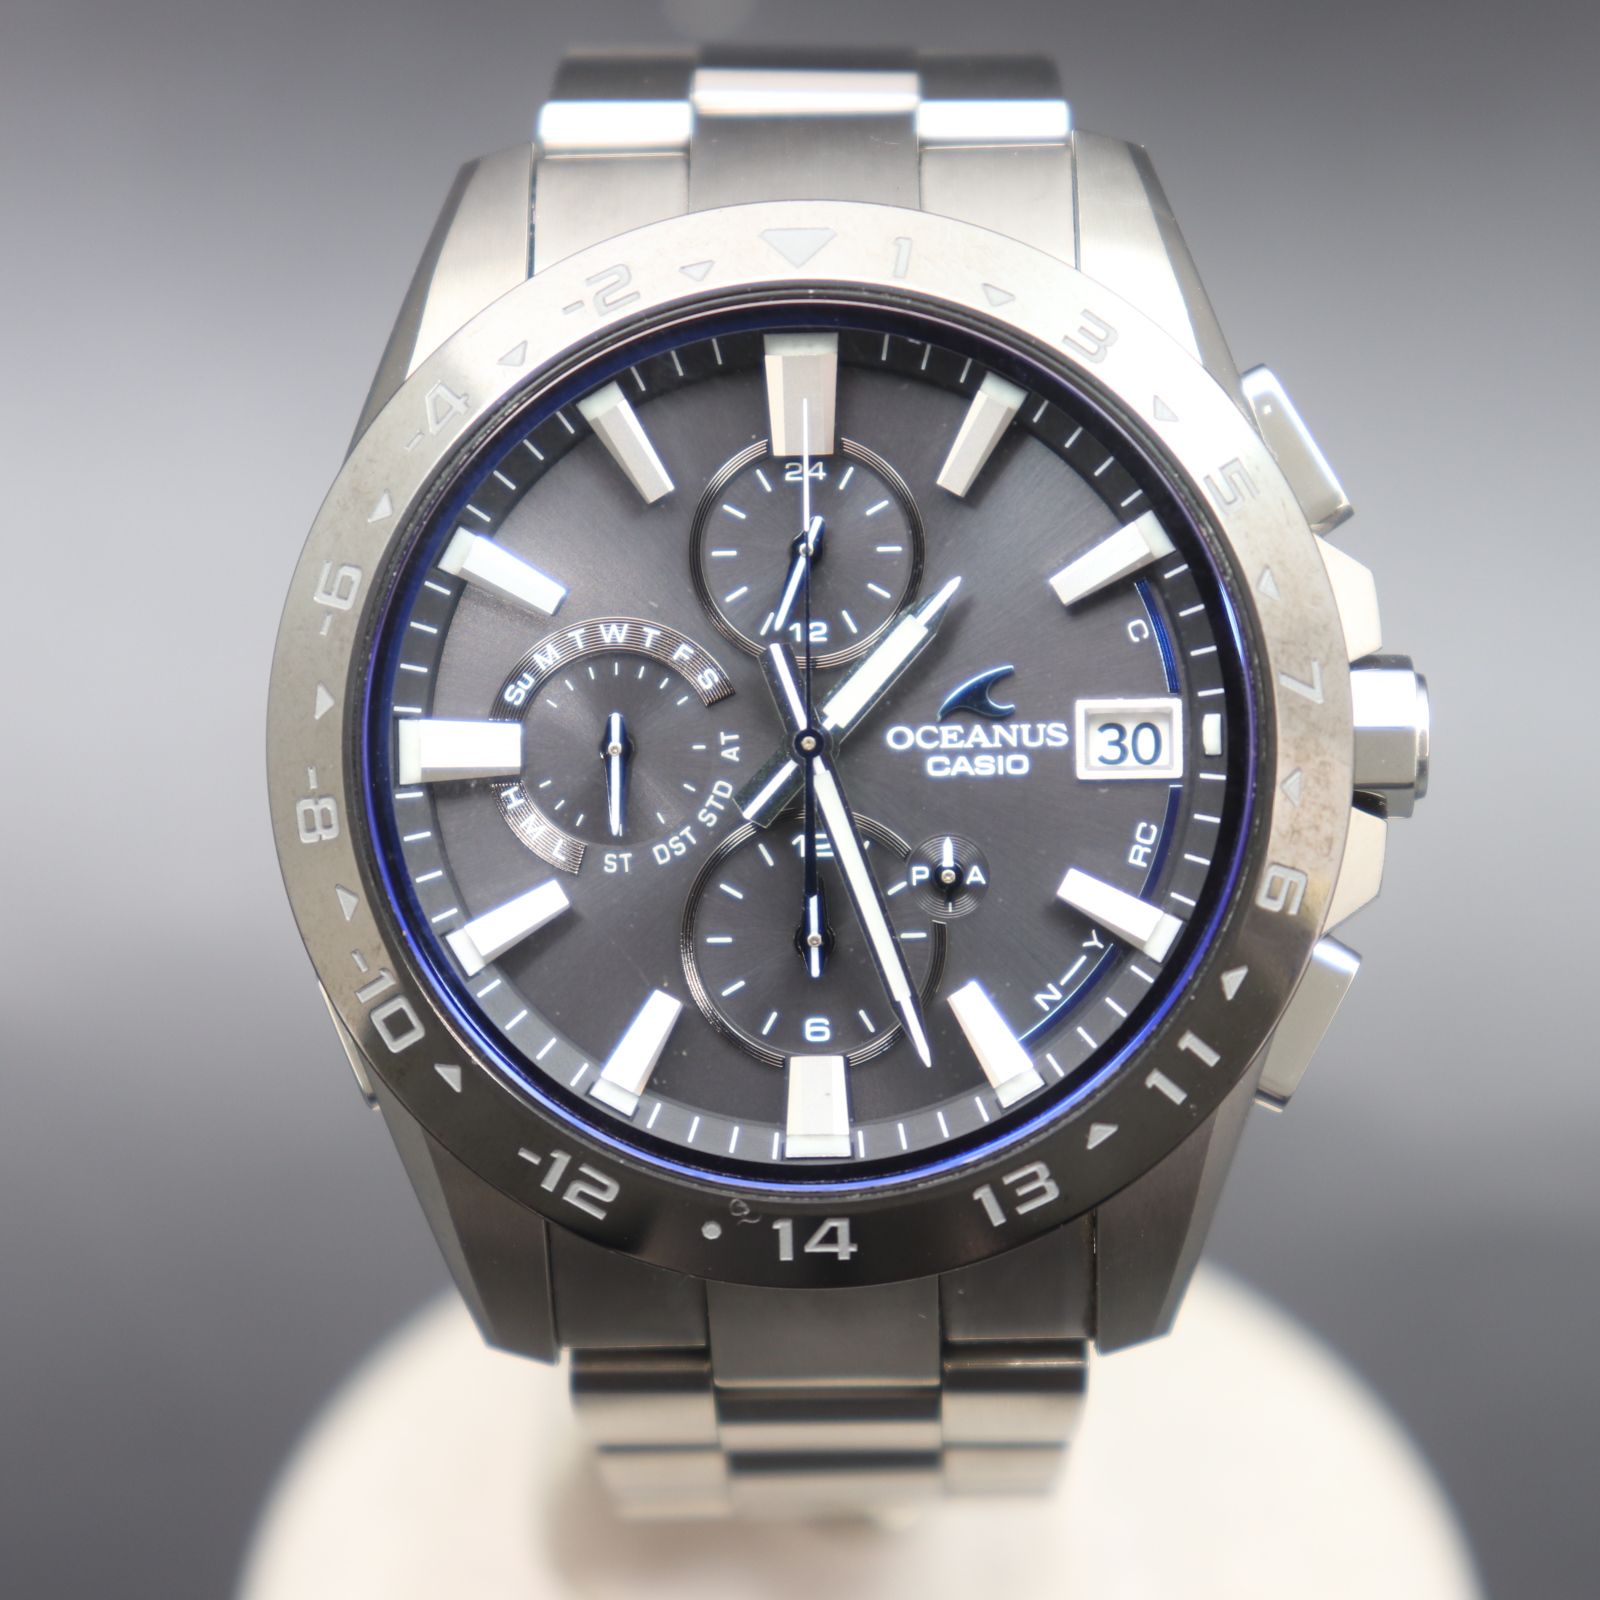 購入店舗オシアナス CLASSIC 新品 腕時計 電波ソーラー OCW-T2600-2A2JF シルバー 男性 CASIO メンズ 未使用品 OCEANUS